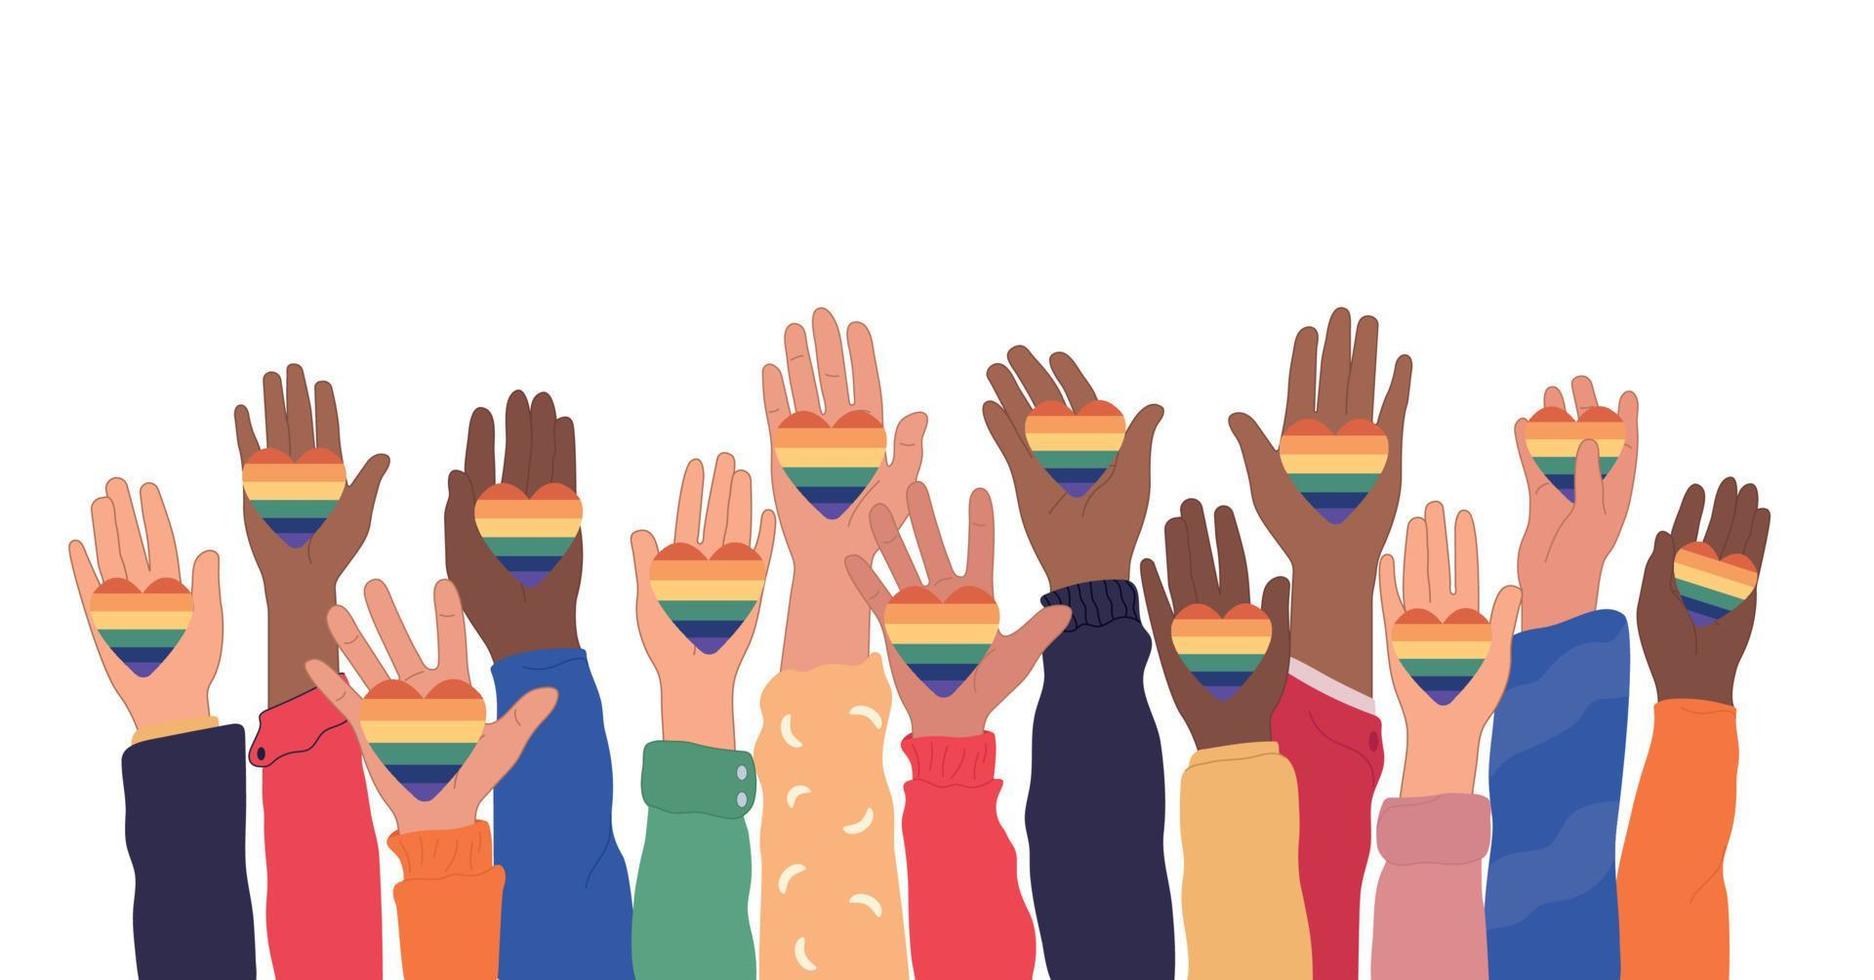 mãos humanas segurando bandeiras transgênero e lgbt do arco-íris durante o mês do orgulho ou dia de celebração ou desfile. ilustração vetorial plana vetor